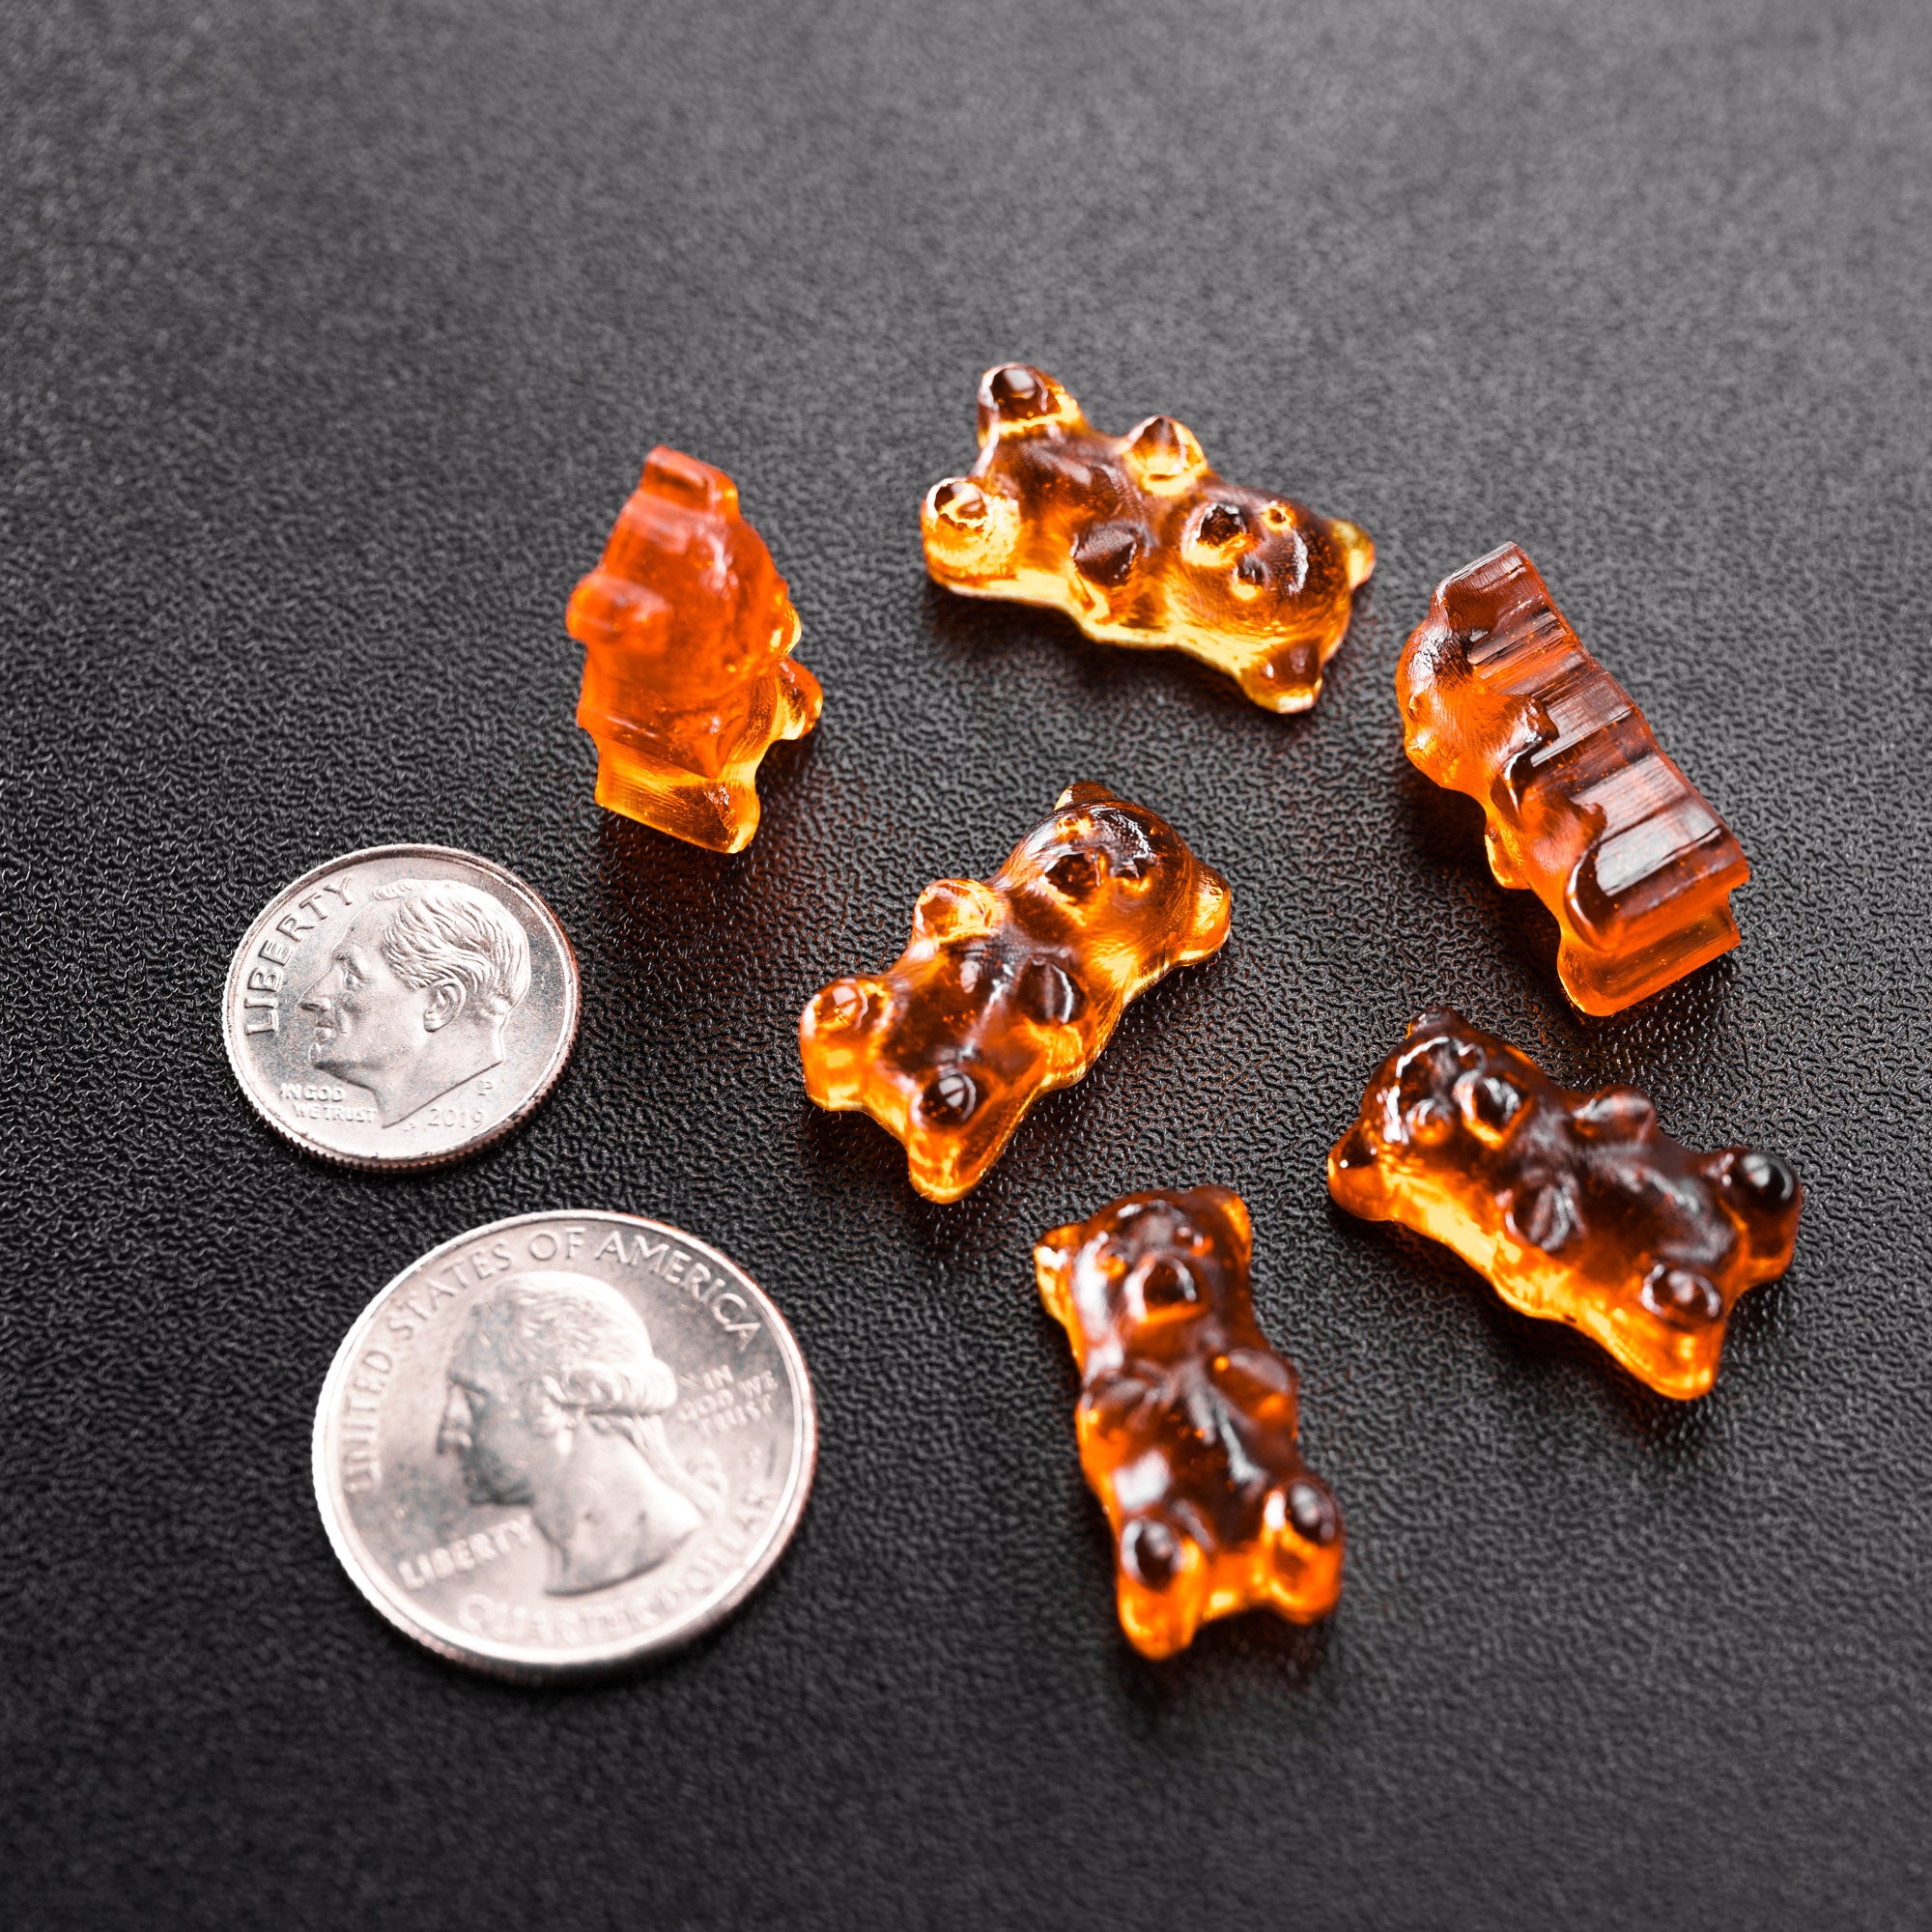 1.5mL Gummy Bear Full Sheet Candy Mold - 585 Cavities - 23219